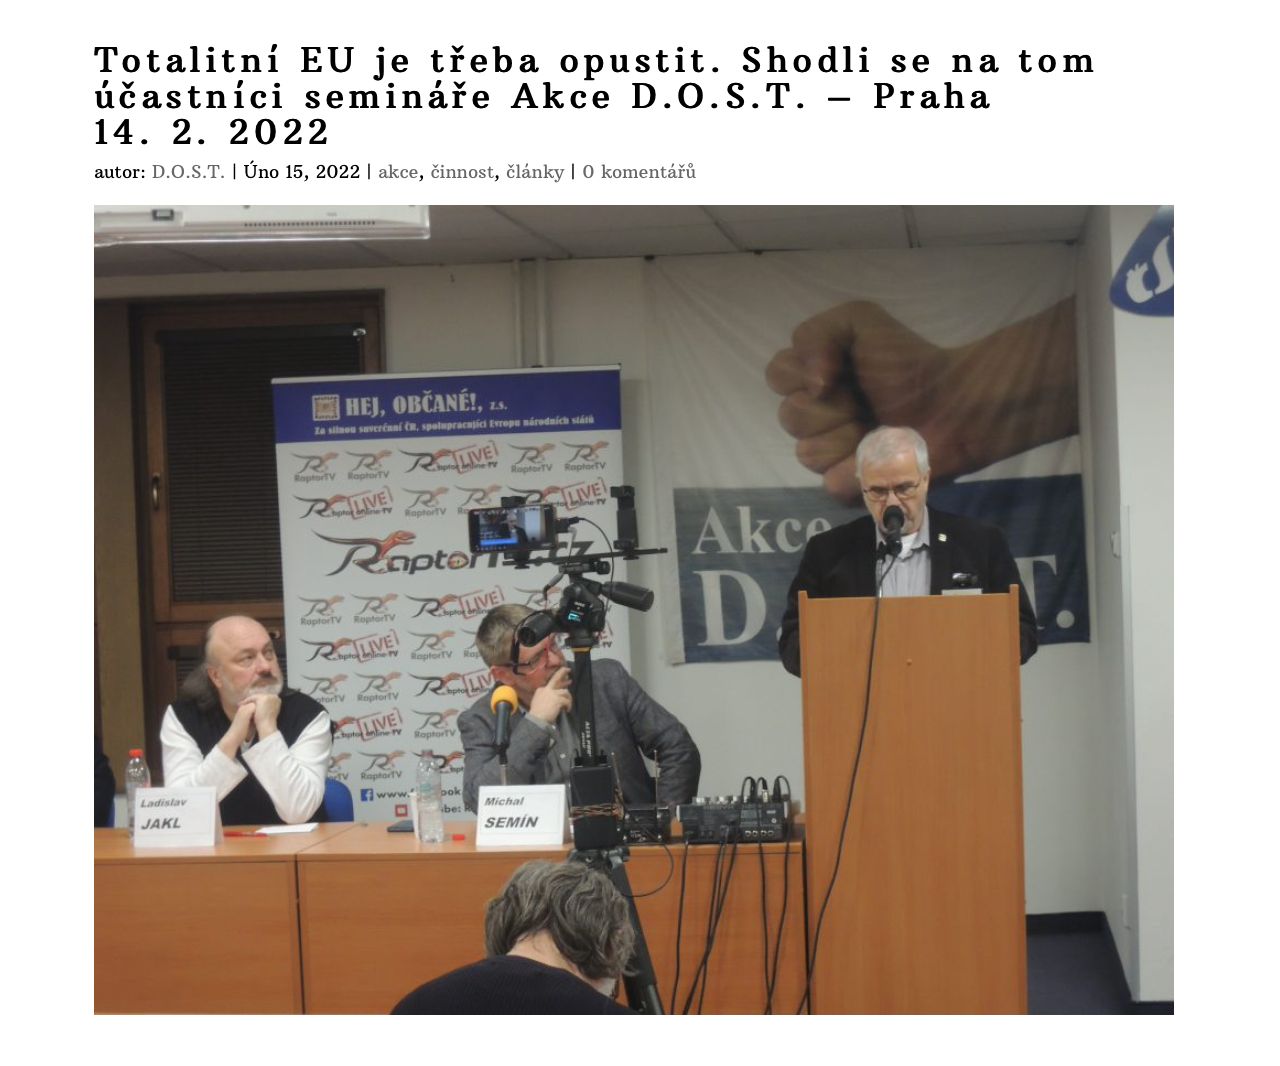 Petr Drulák se zúčastnil konference, která požadovala vystoupení z "totalitní EU".